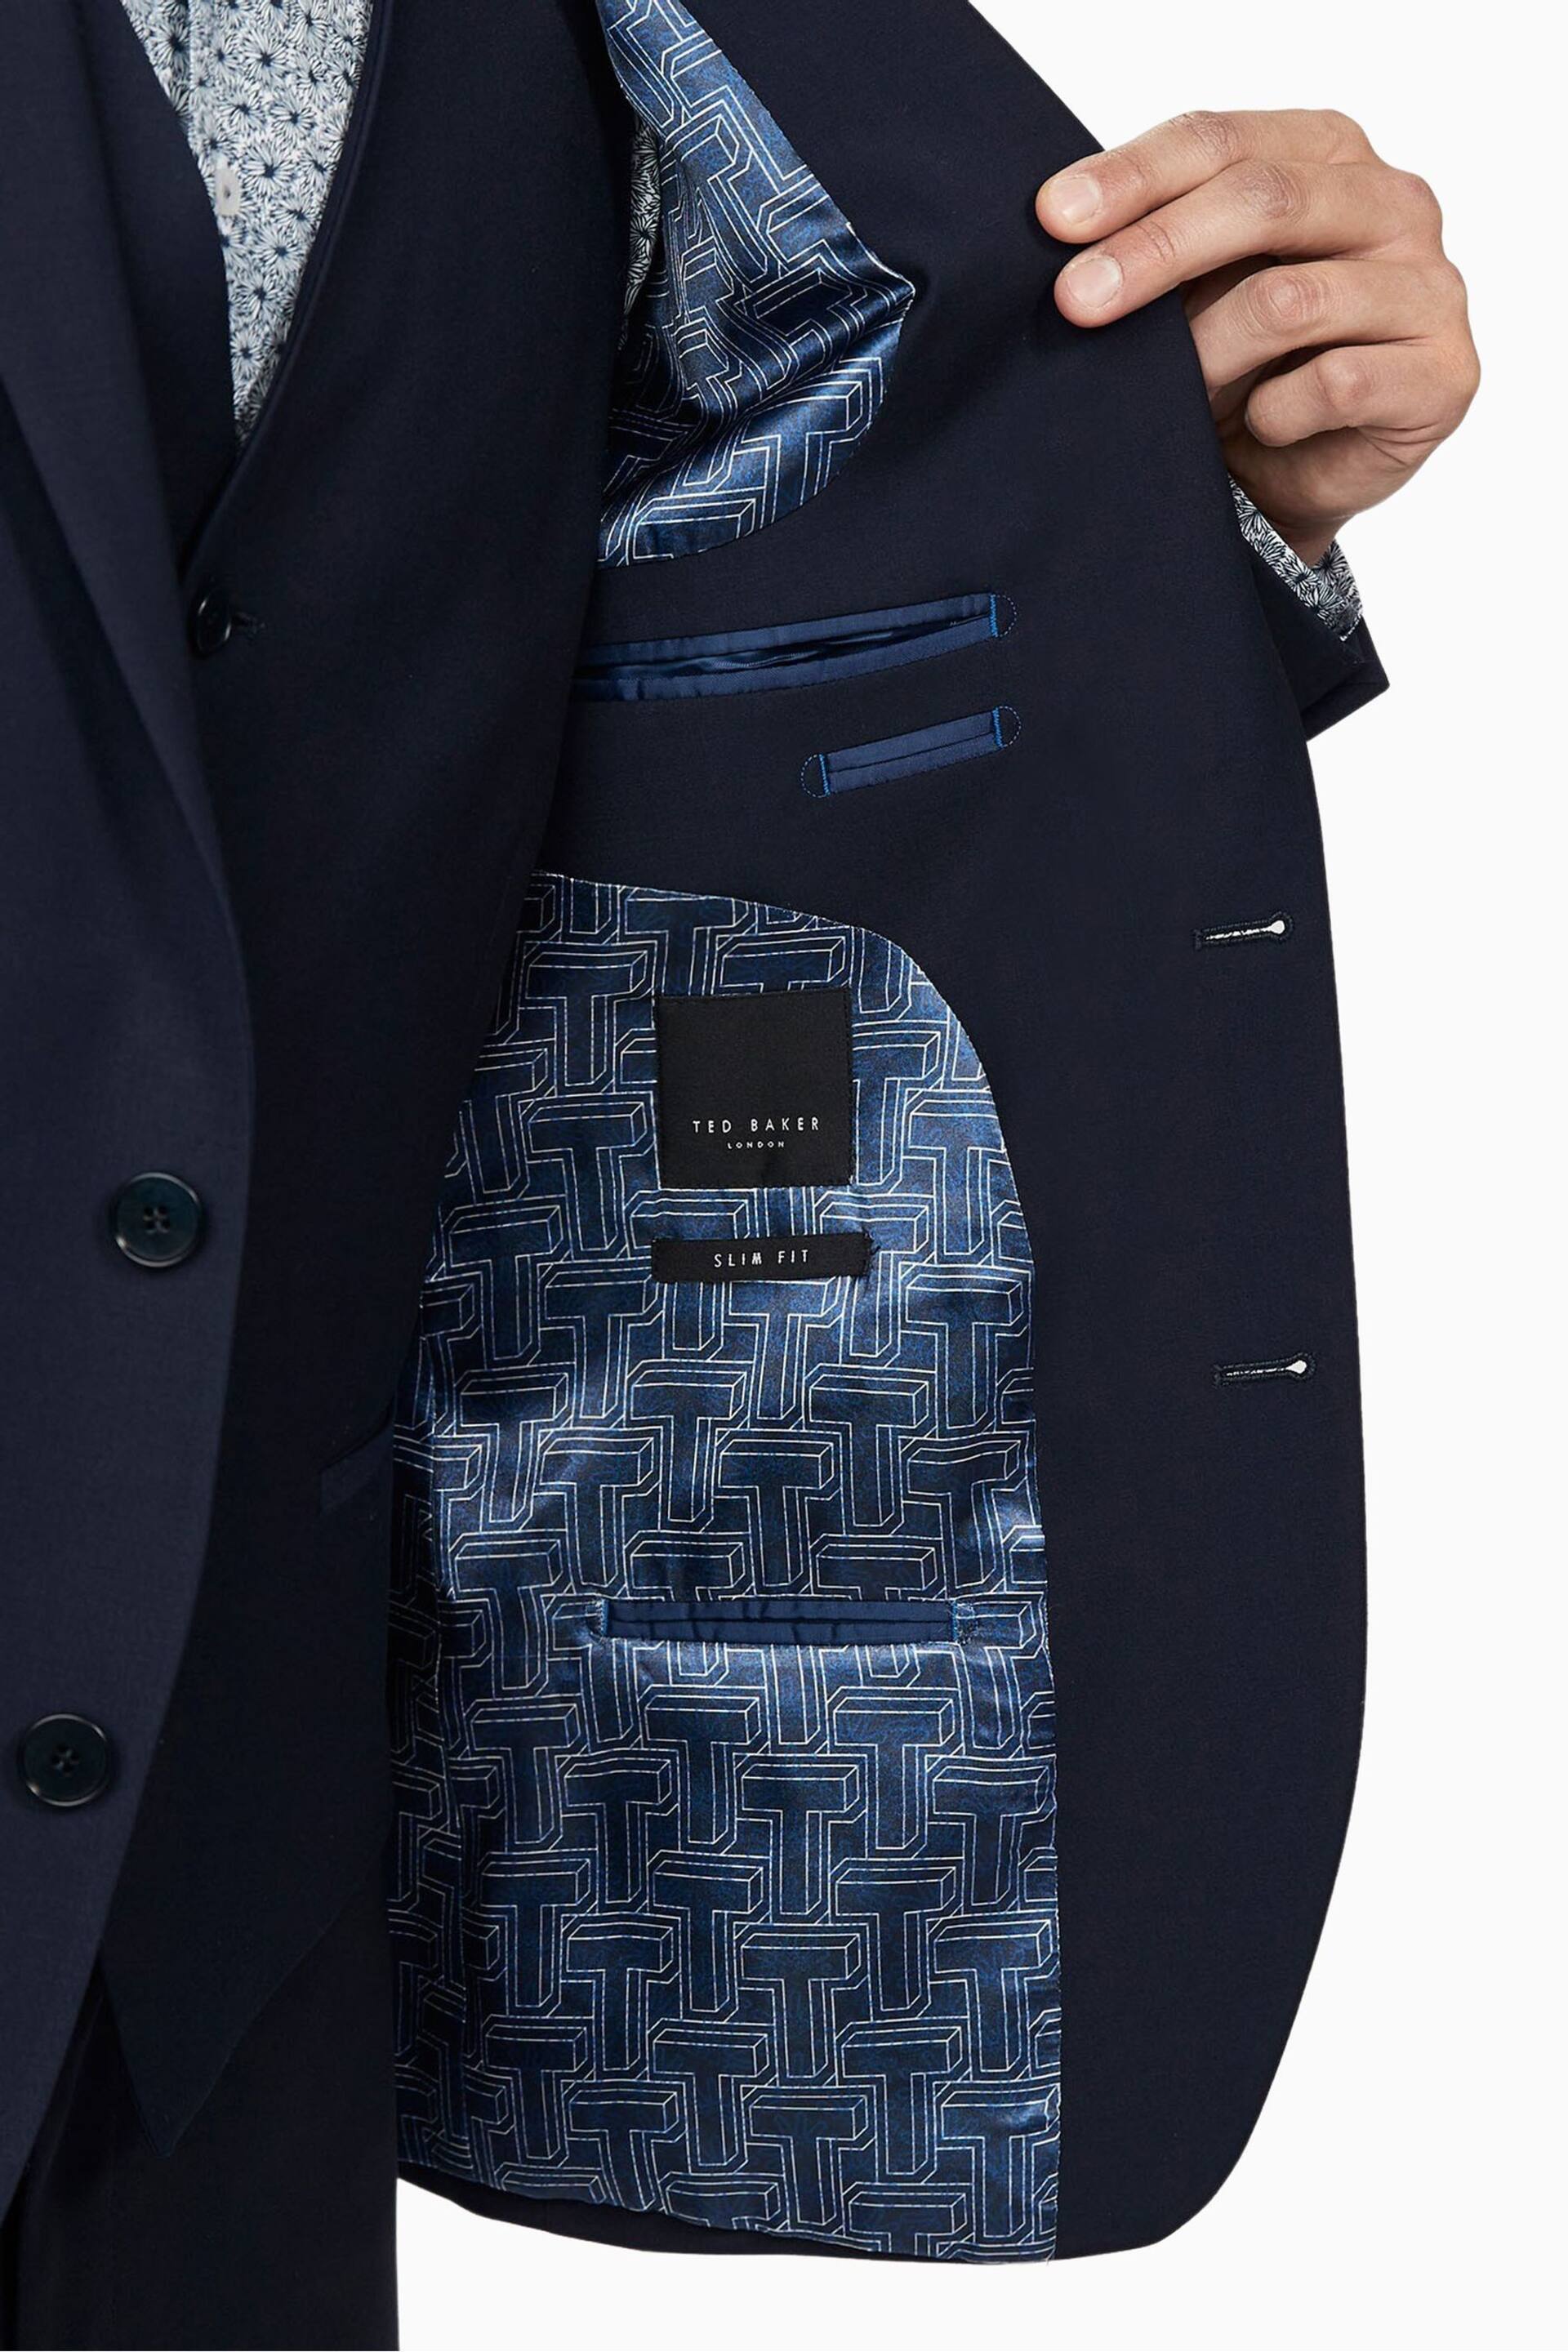 Ted Baker Premium Navy Blue Wool Panama Slim Suit: Jacket - Image 3 of 7